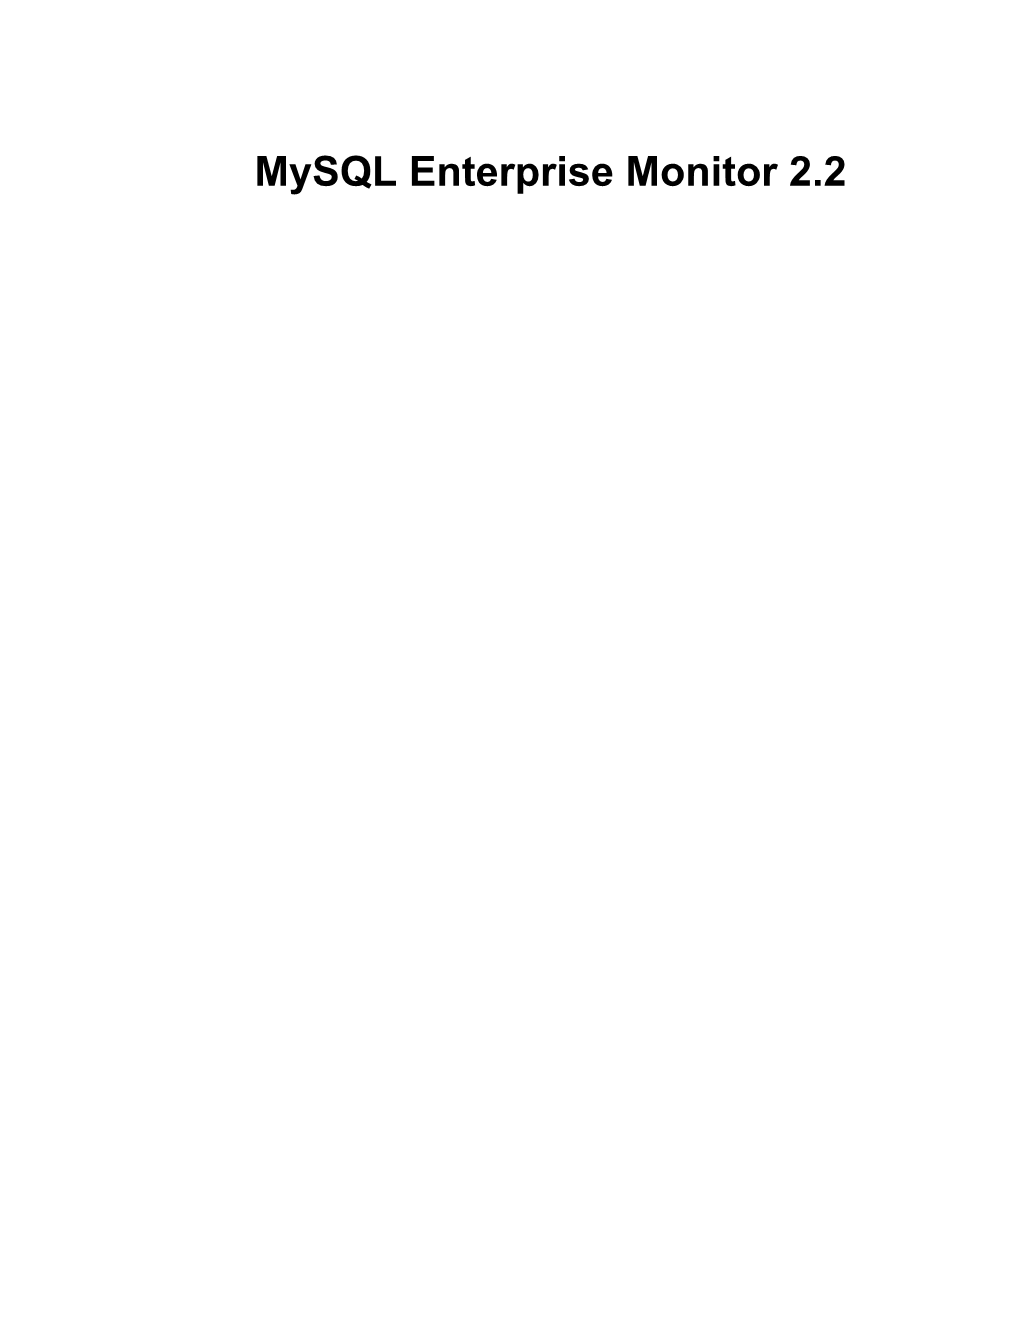 Mysql Enterprise Monitor 2.2 Mysql Enterprise Monitor 2.2 Manual Abstract